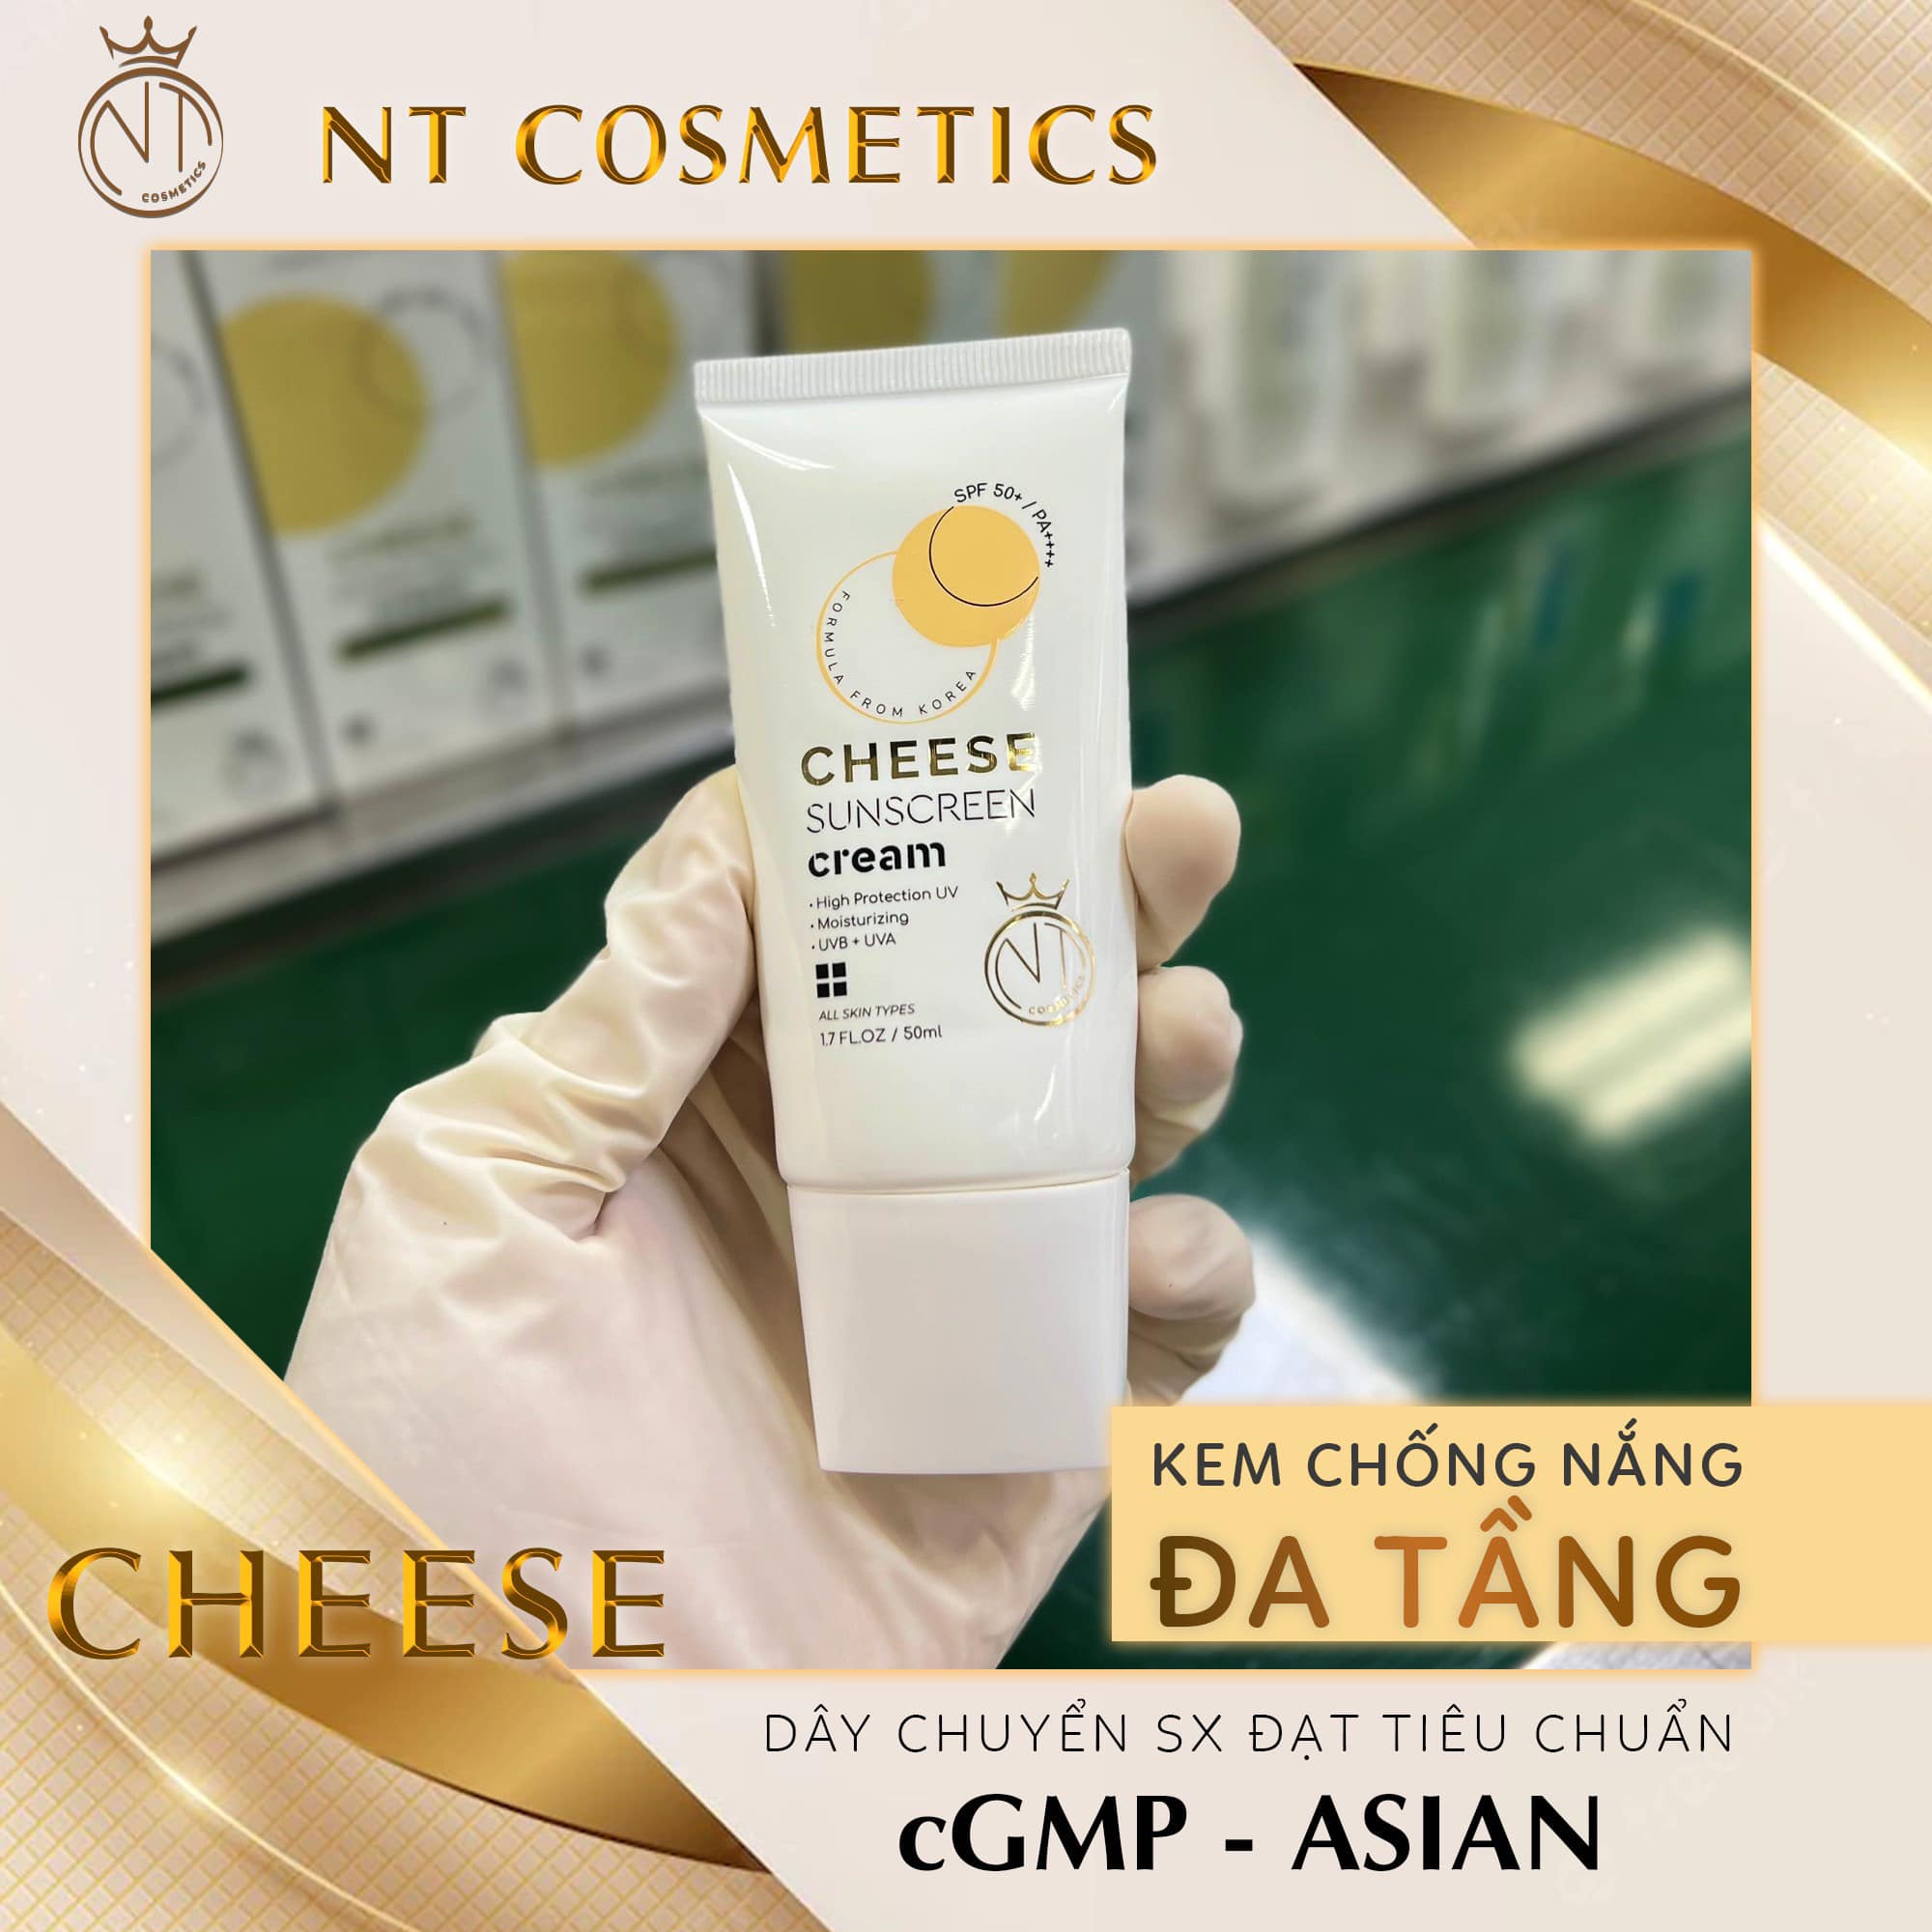 Kem Chống Nắng Cheese Mỹ Phẩm Ngọc Tú NT Cosmetics - 8936206760078